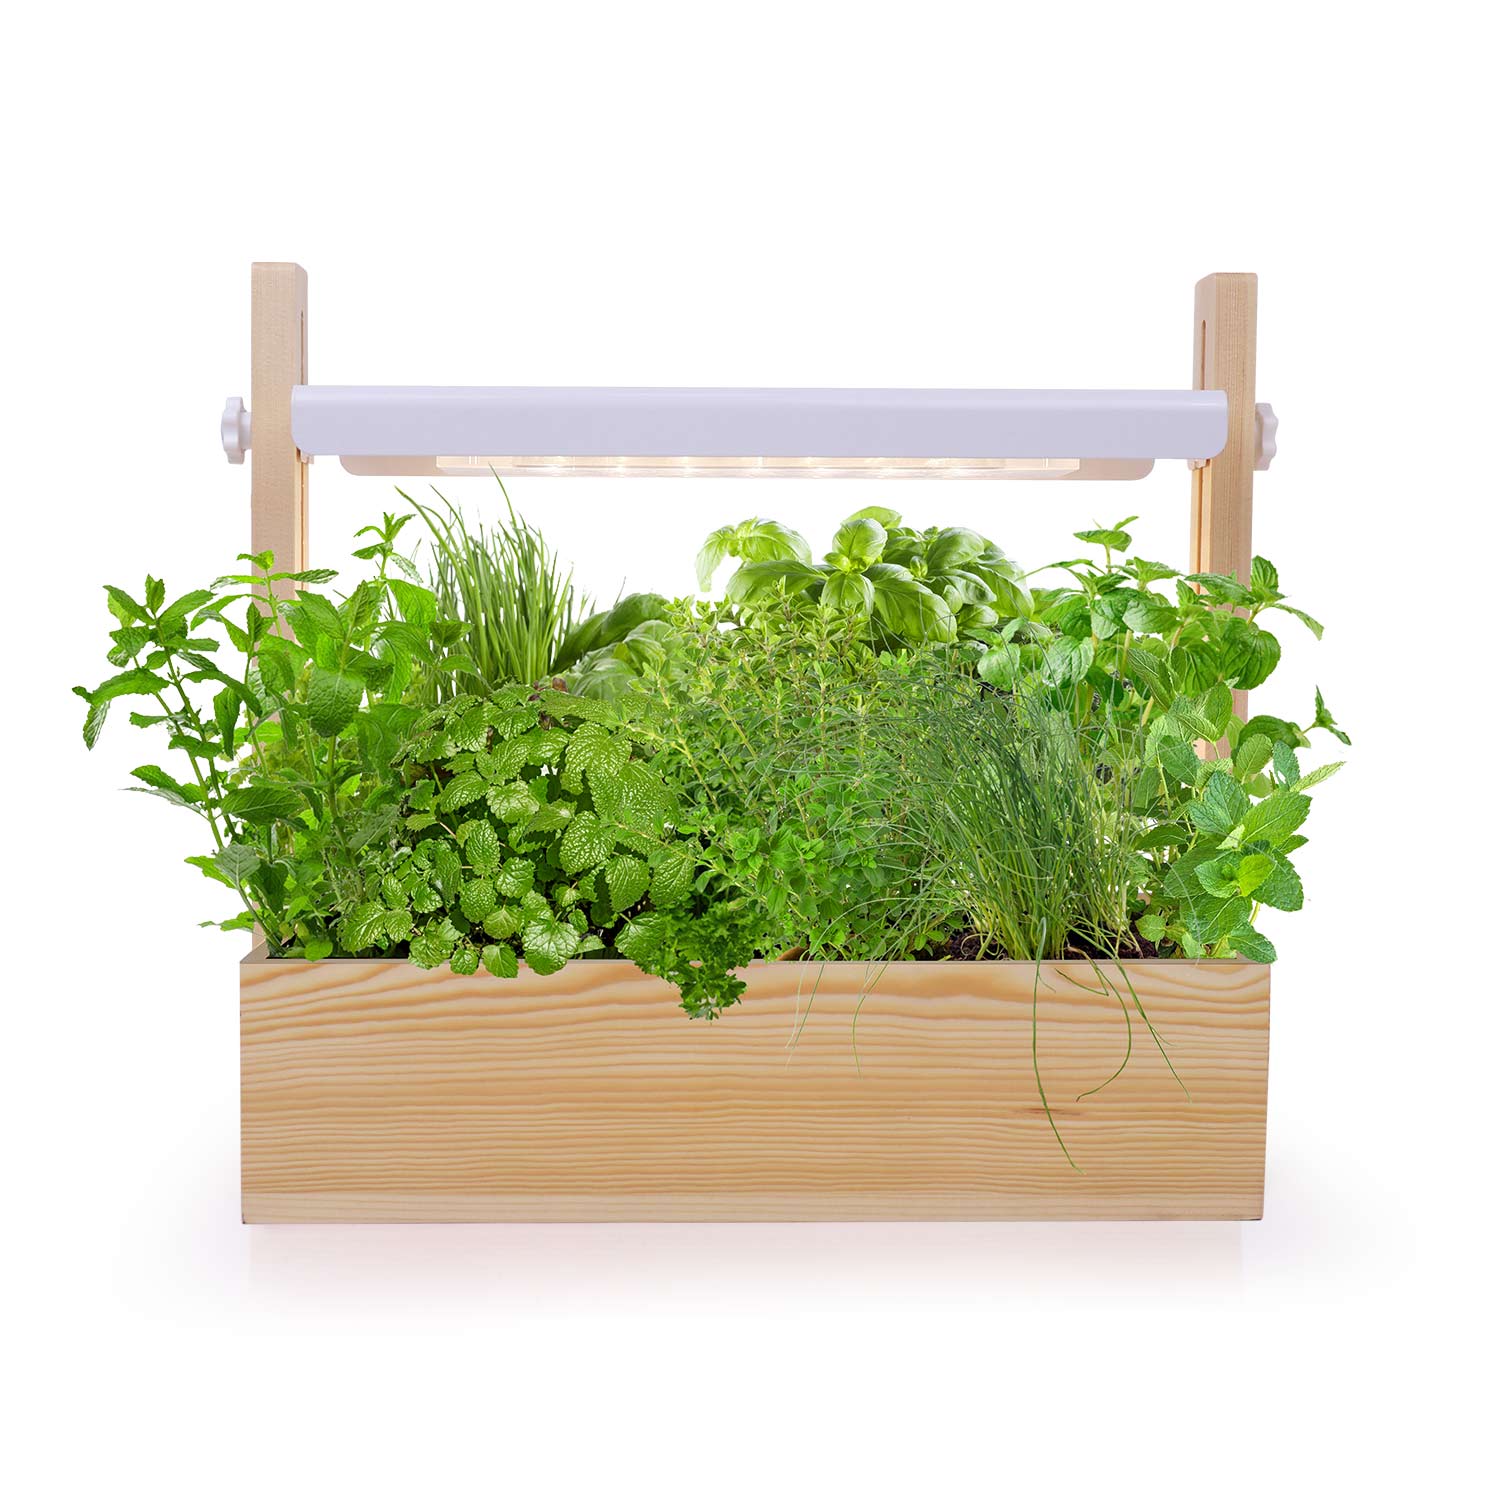 MG412 indoor herb mini garden hydroponic plants full spectrum led Garden Starter Kit